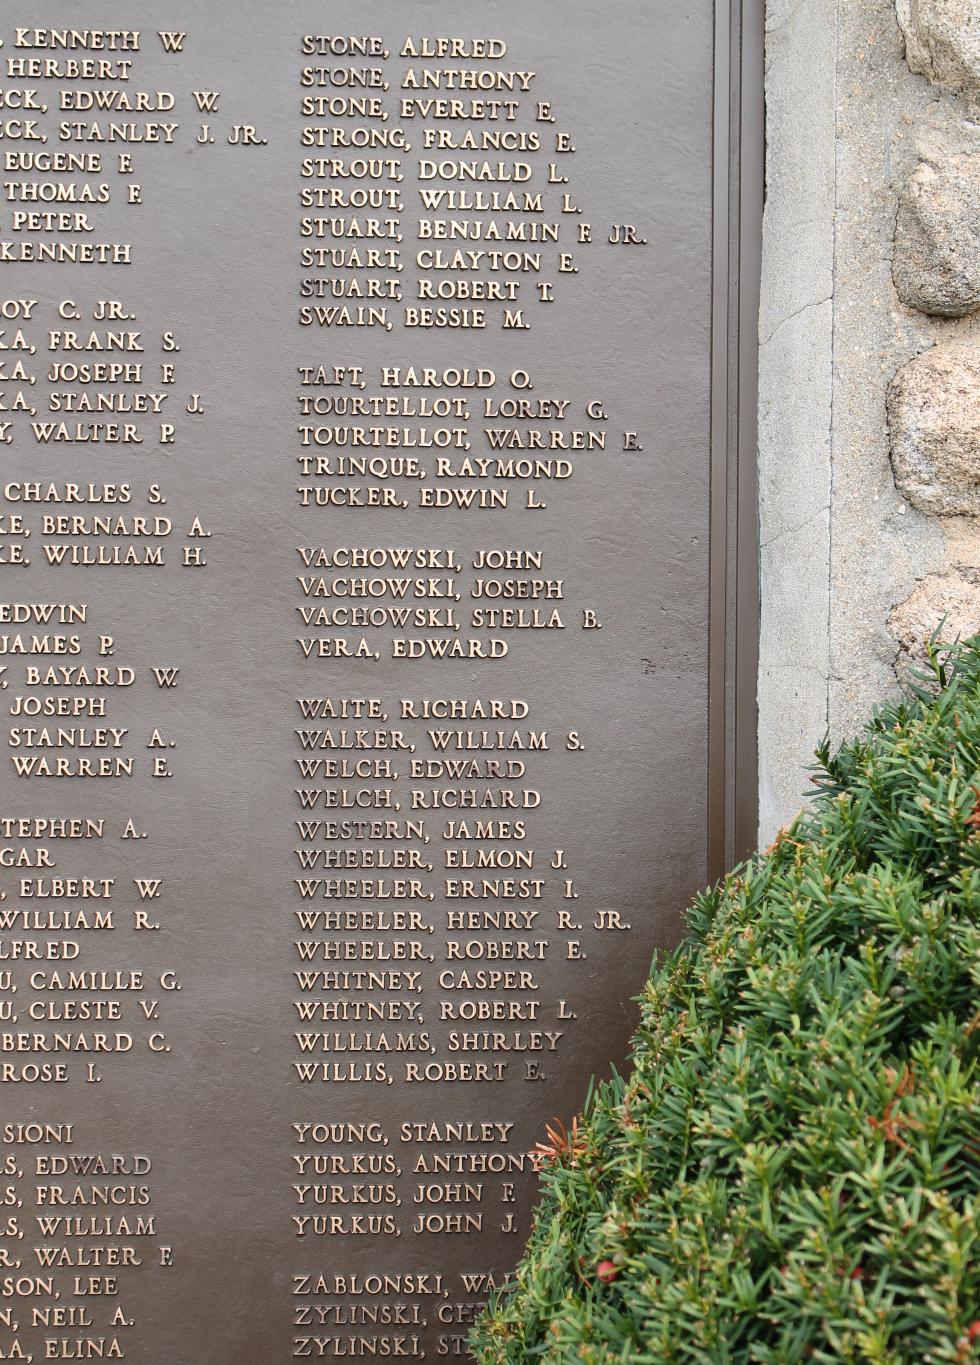 Baldwinville Massachusetts World War II Veterans Memorial